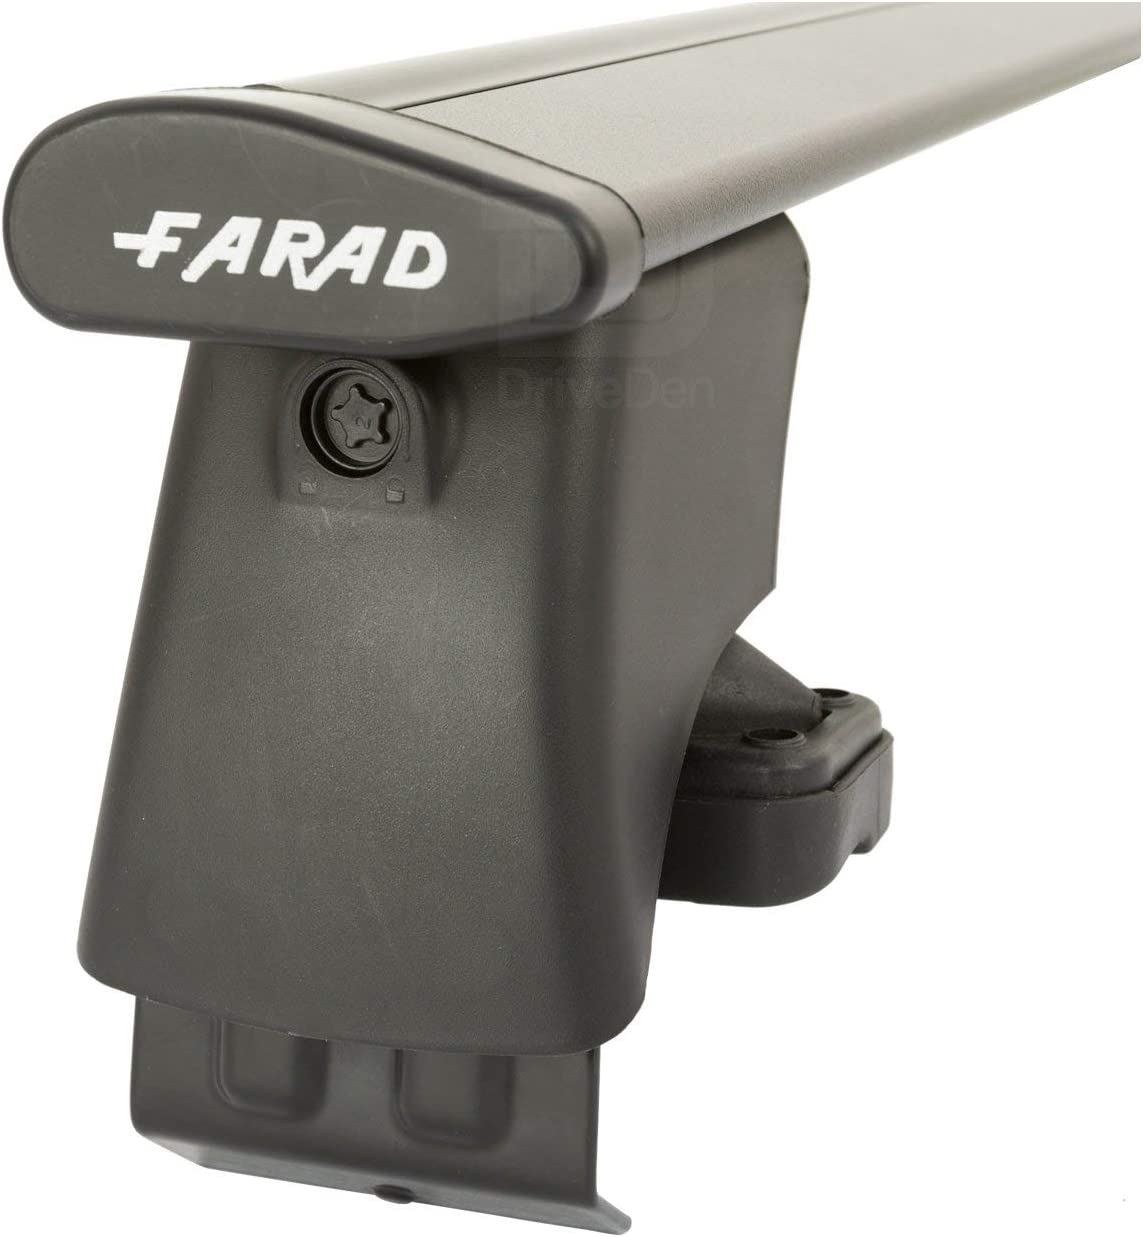 FARAD-Kit H2 per barre portatutto - Land Rover Rang Rover Evoque 2011-2019 (senza corrimano)